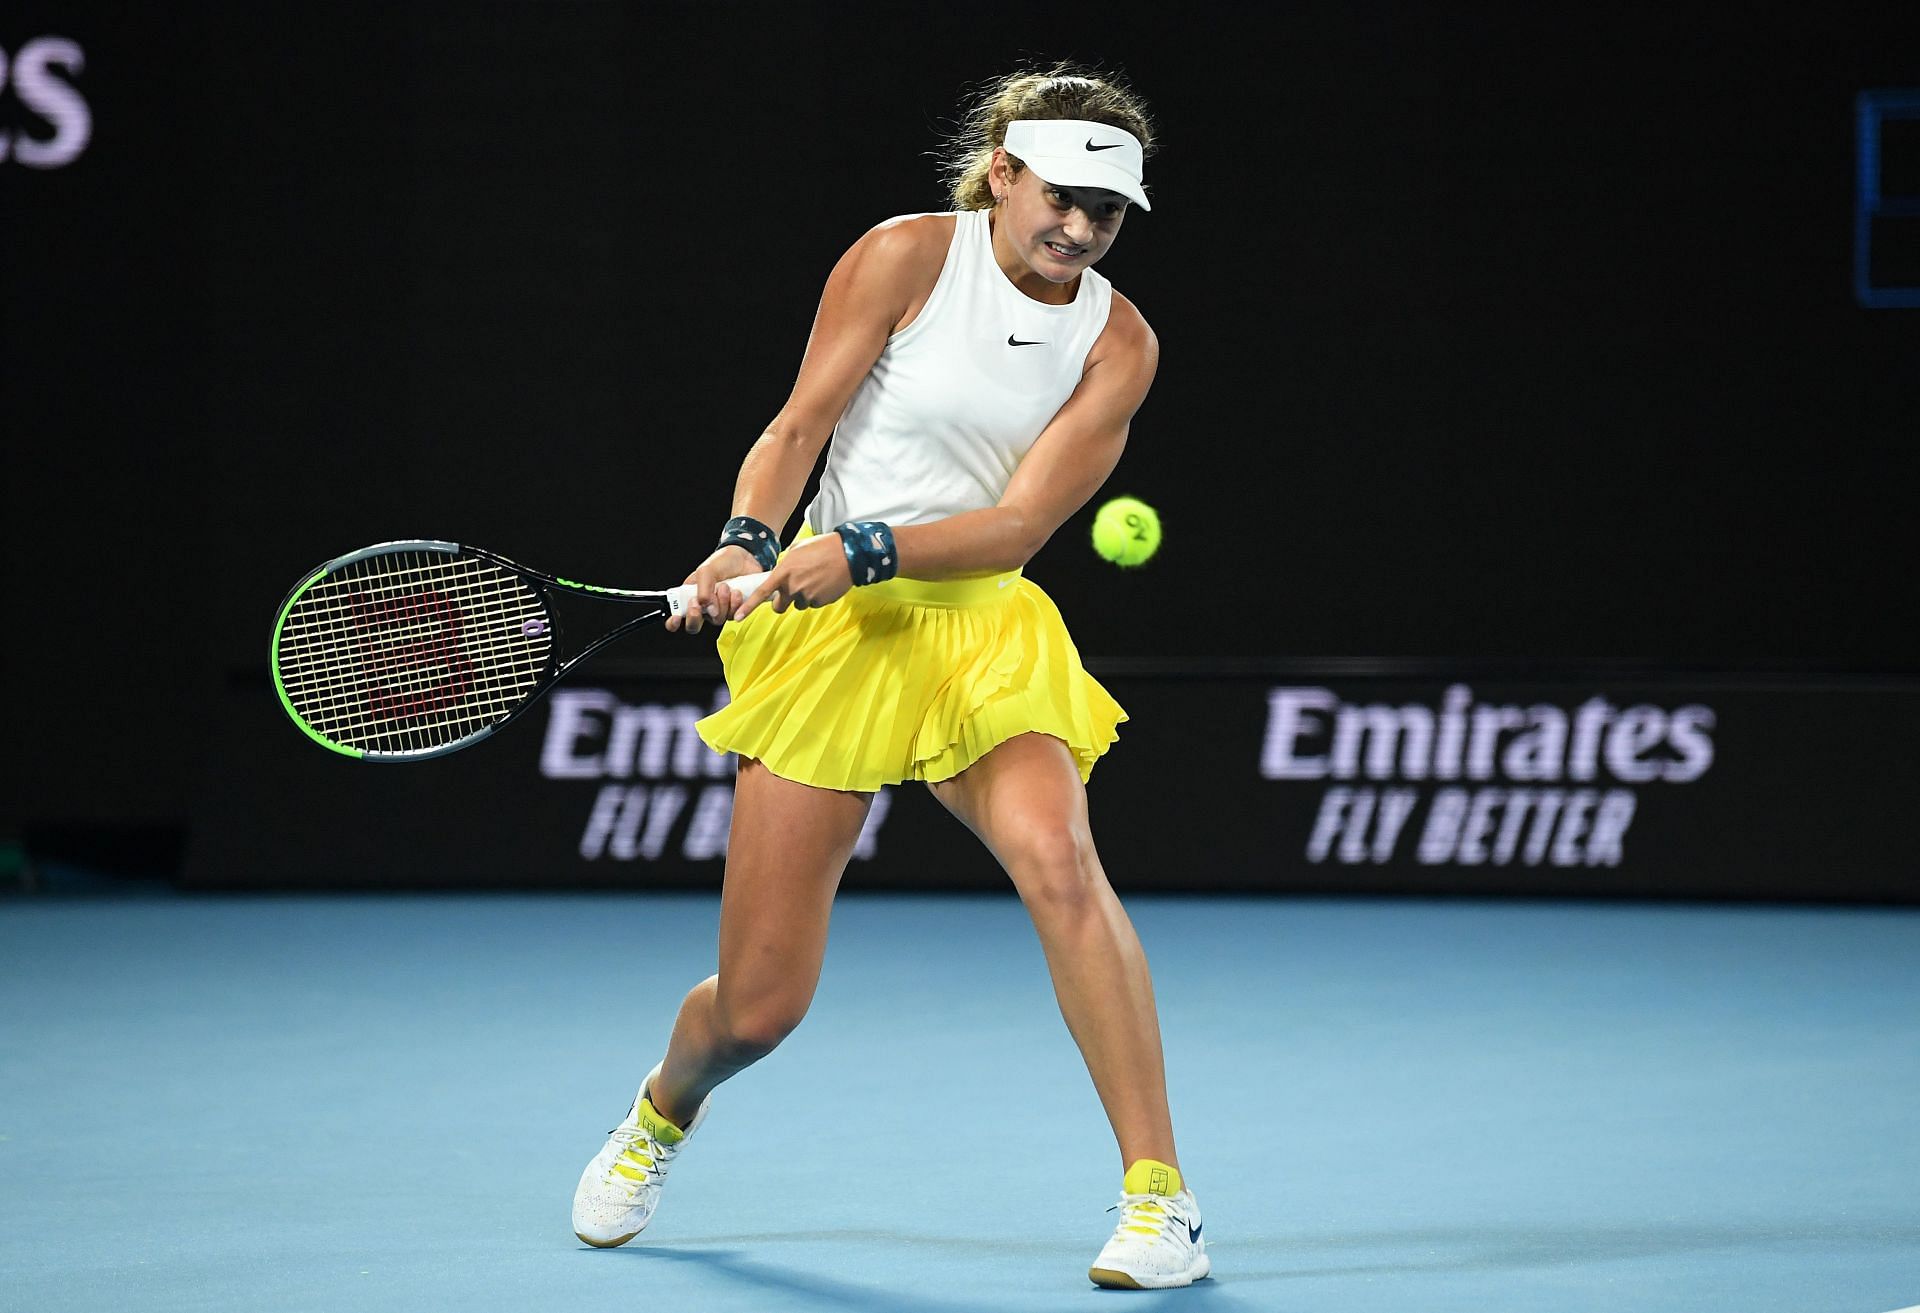 Victoria Jimenez Kasintseva at the 2020 Australian Open